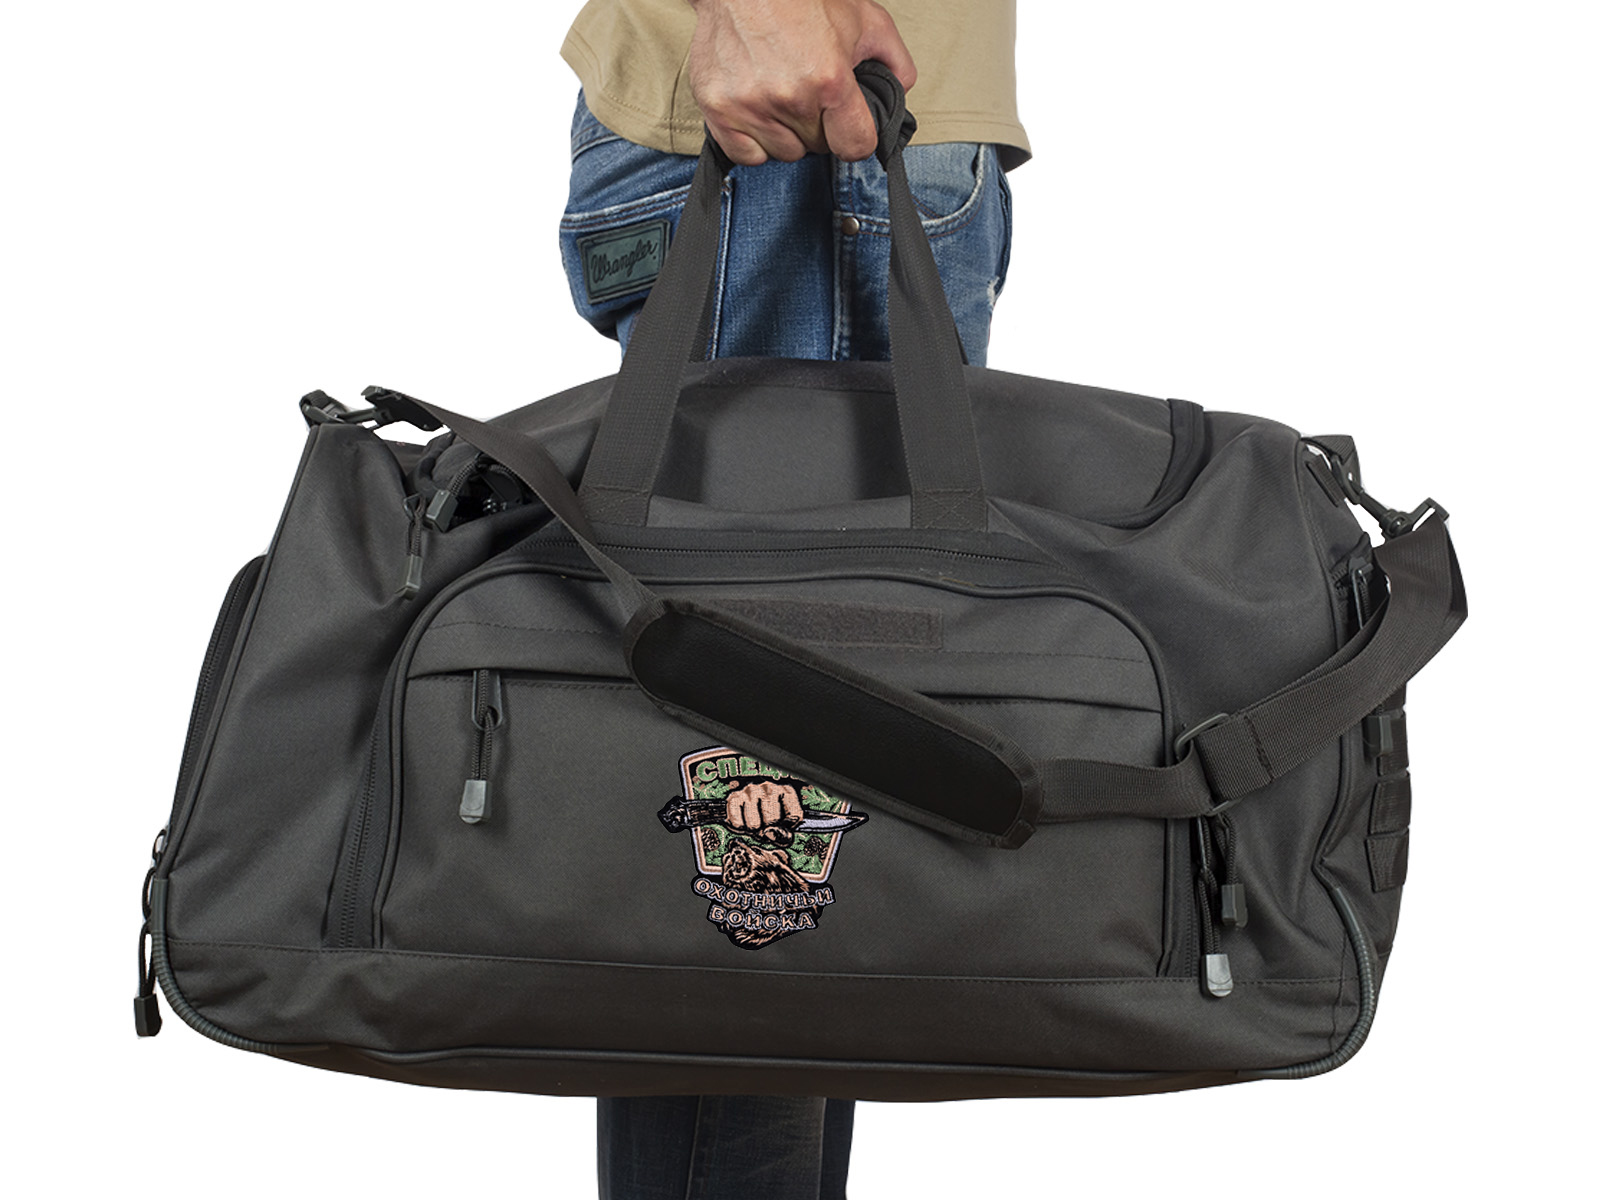 Практичная полевая сумка с нашивкой Охотничьих войск (35 л) 